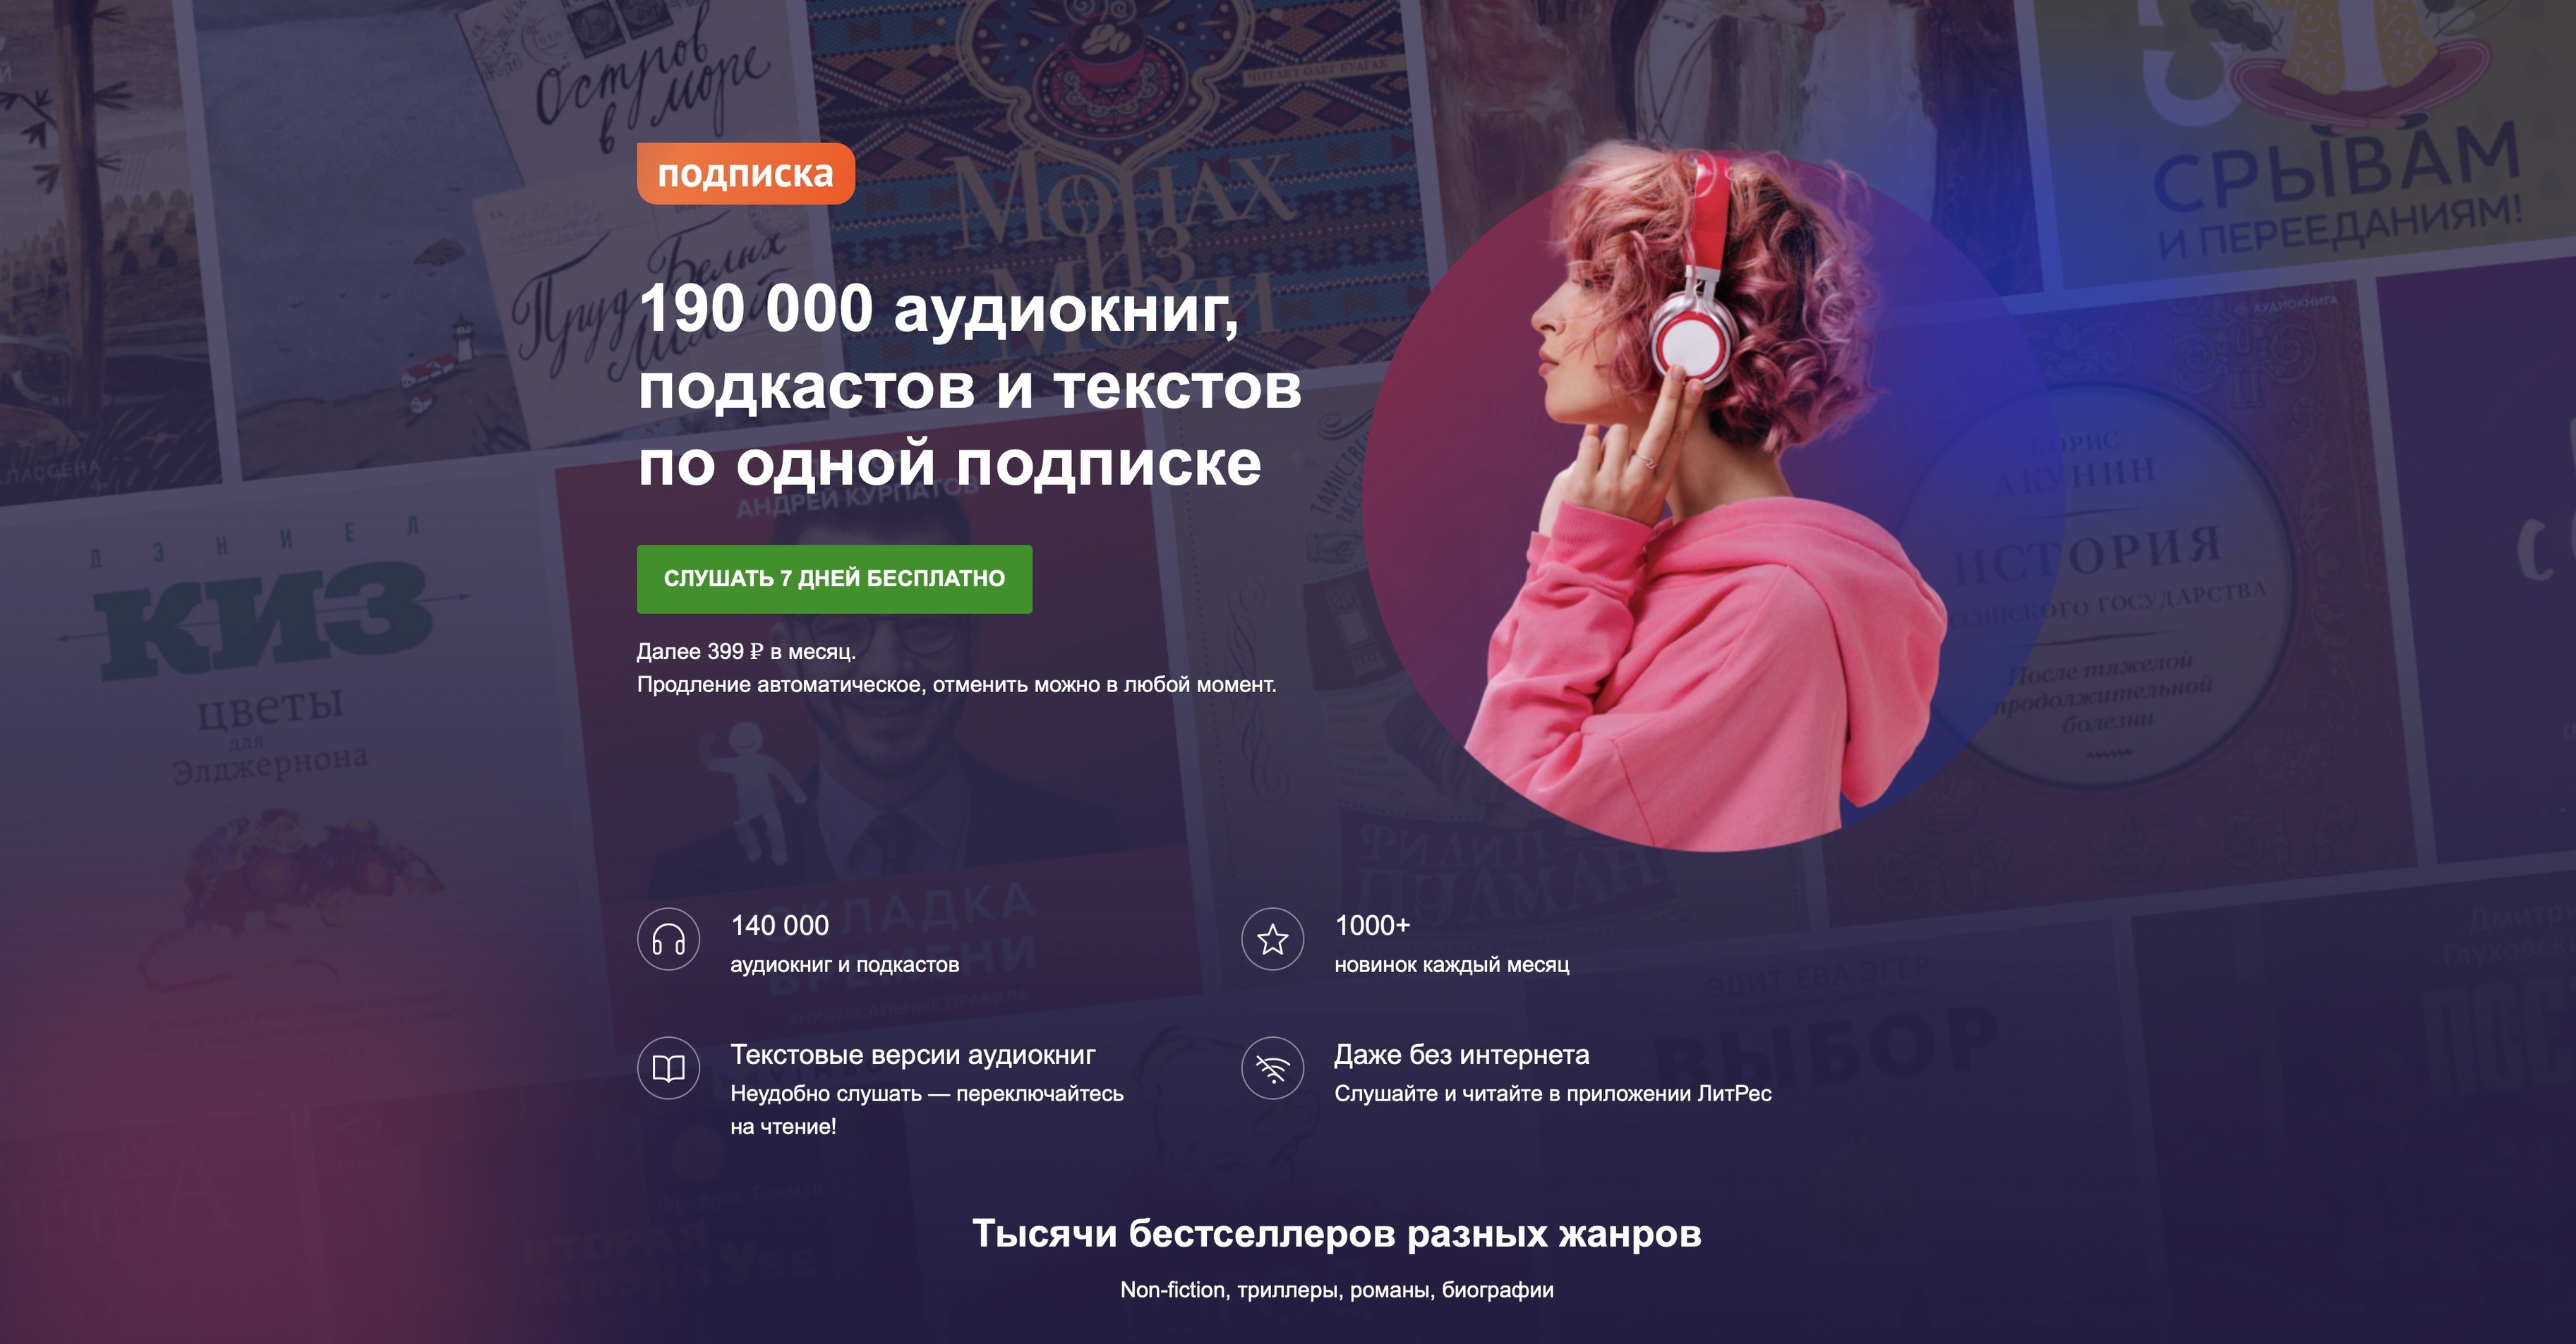 Как на музыку, но с пользой: в России запустили подписку на аудиокниги